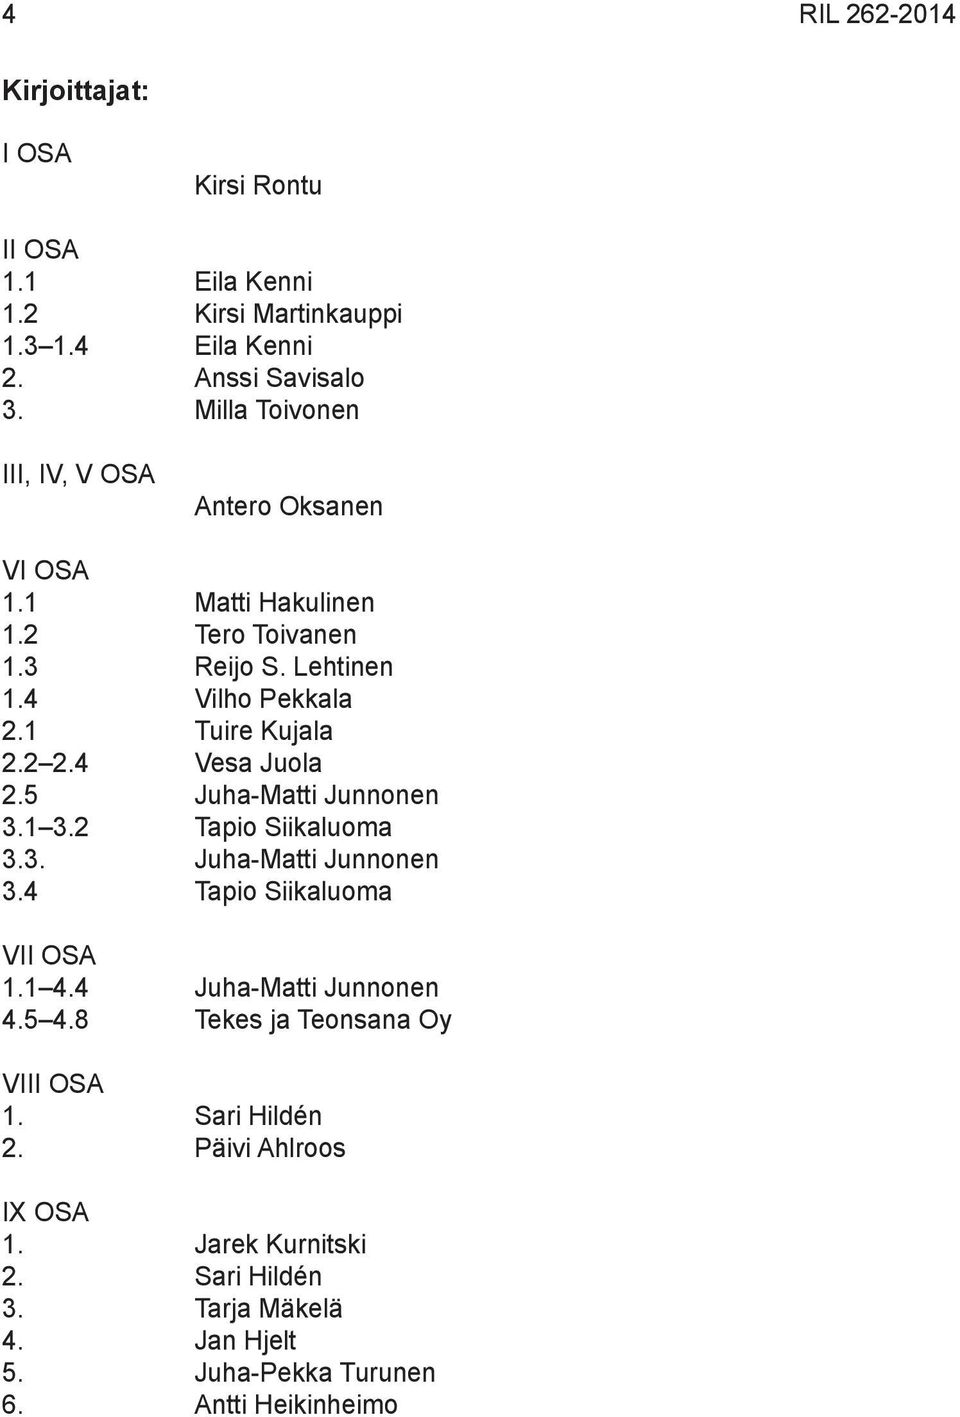 4 Vesa Juola 2.5 Juha-Matti Junnonen 3.1 3.2 Tapio Siikaluoma 3.3. Juha-Matti Junnonen 3.4 Tapio Siikaluoma VII OSA 1.1 4.4 Juha-Matti Junnonen 4.5 4.